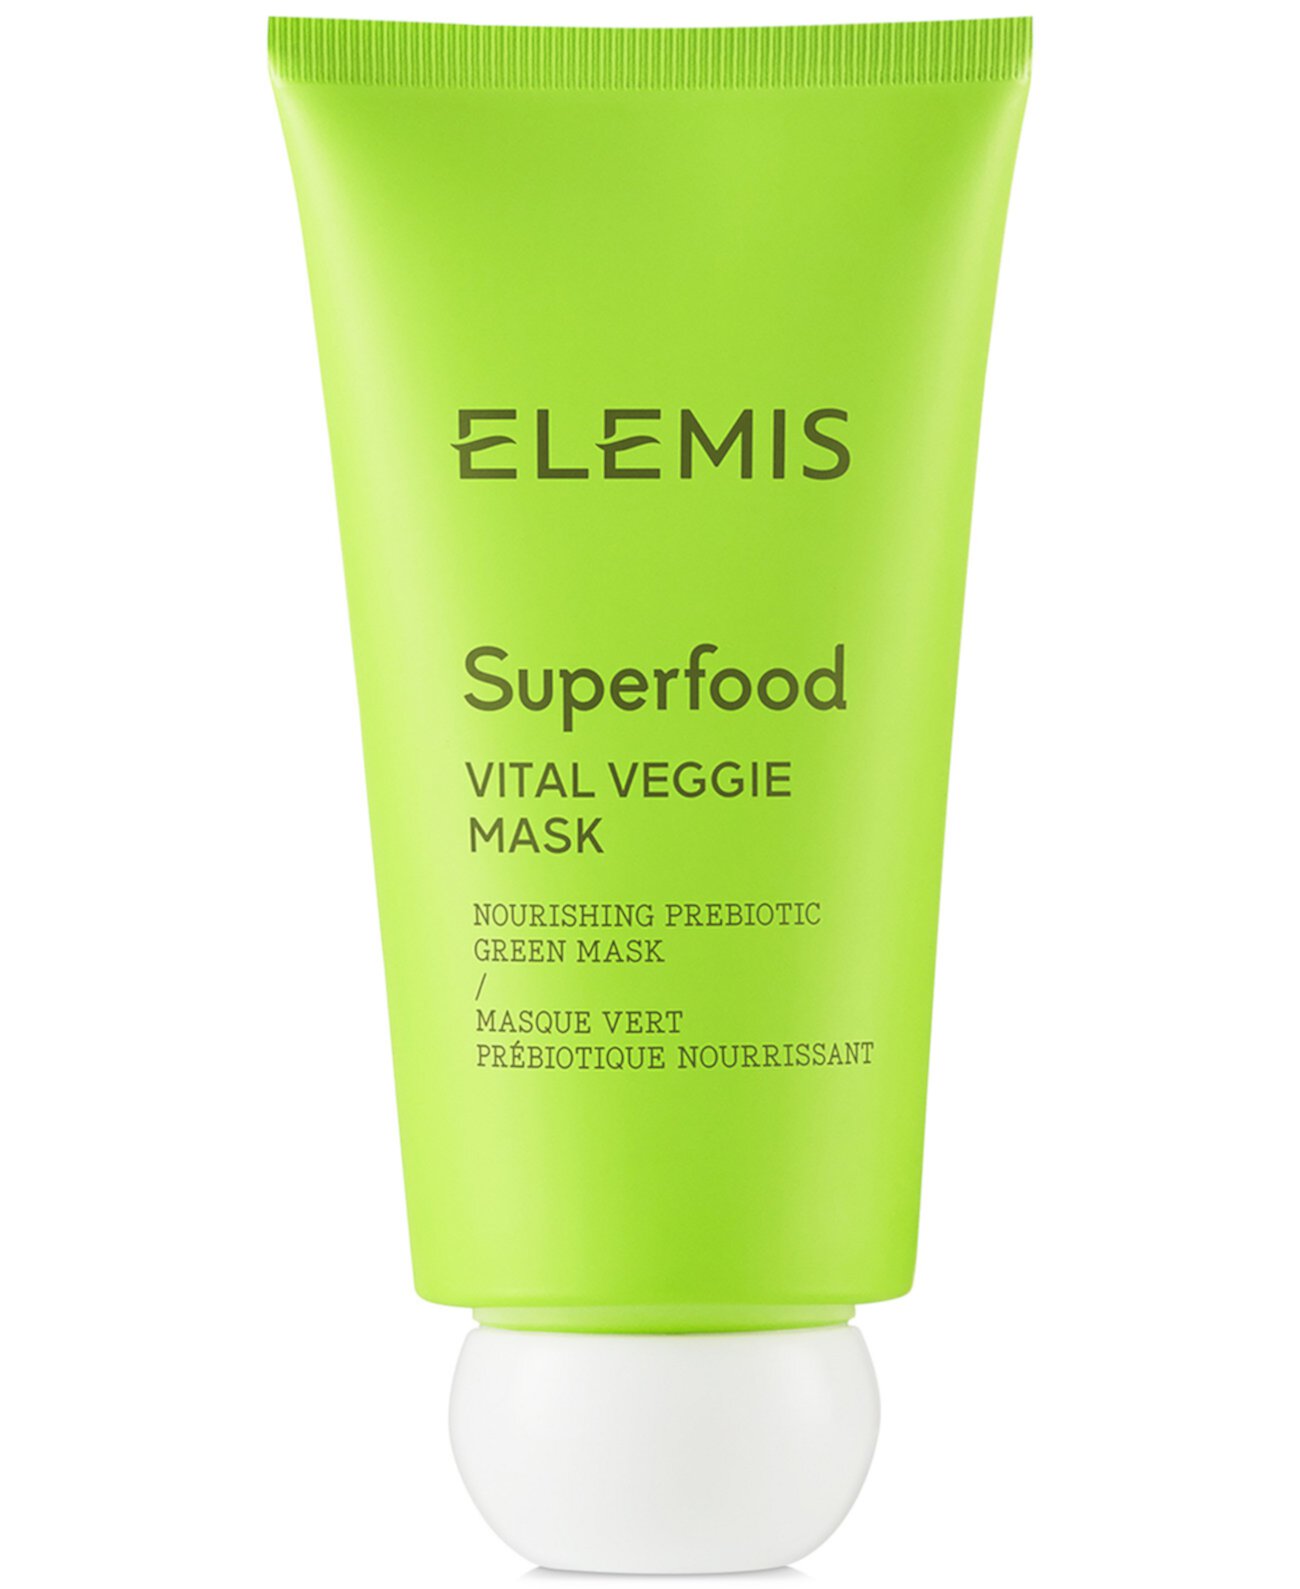 Superfood Vital Veggie Mask, 2,5 унции. Elemis